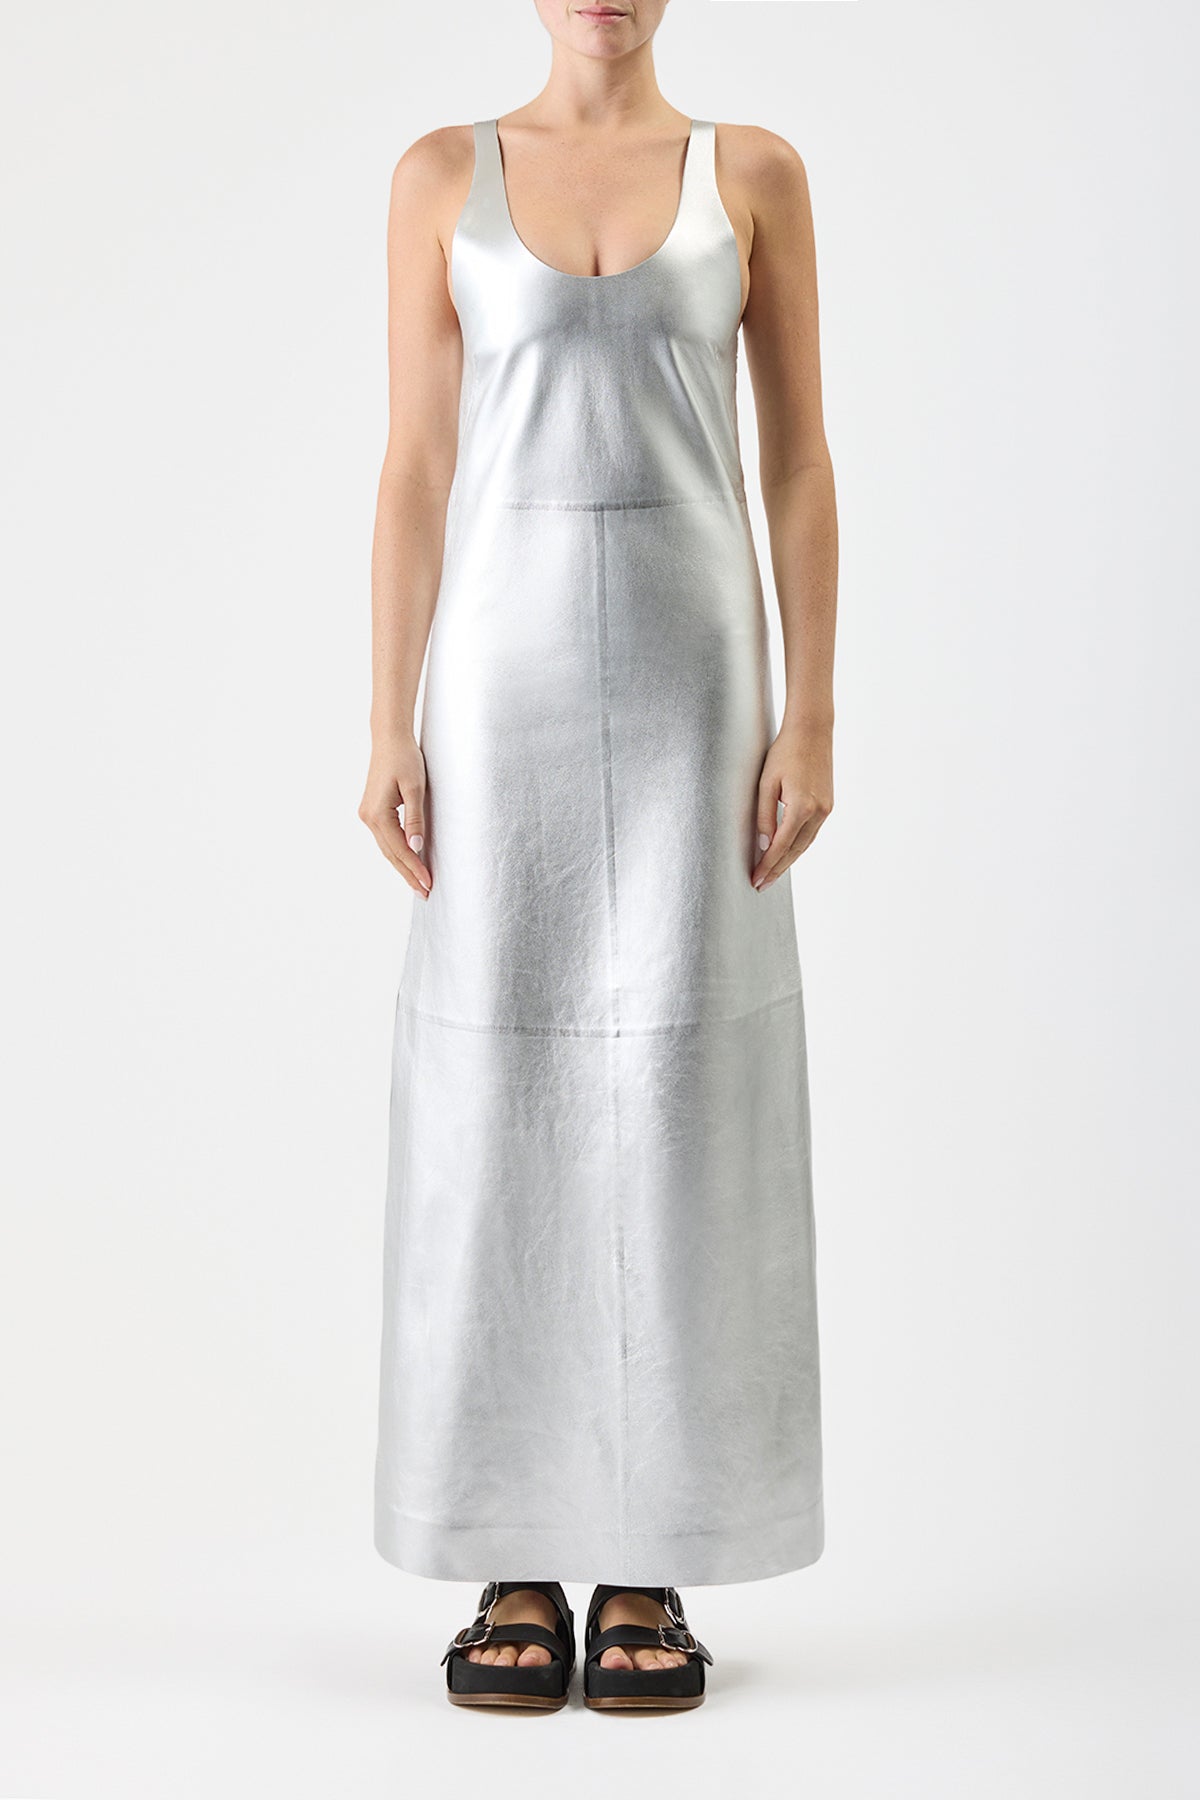 Ellson Dress in Silver Metallic Leather